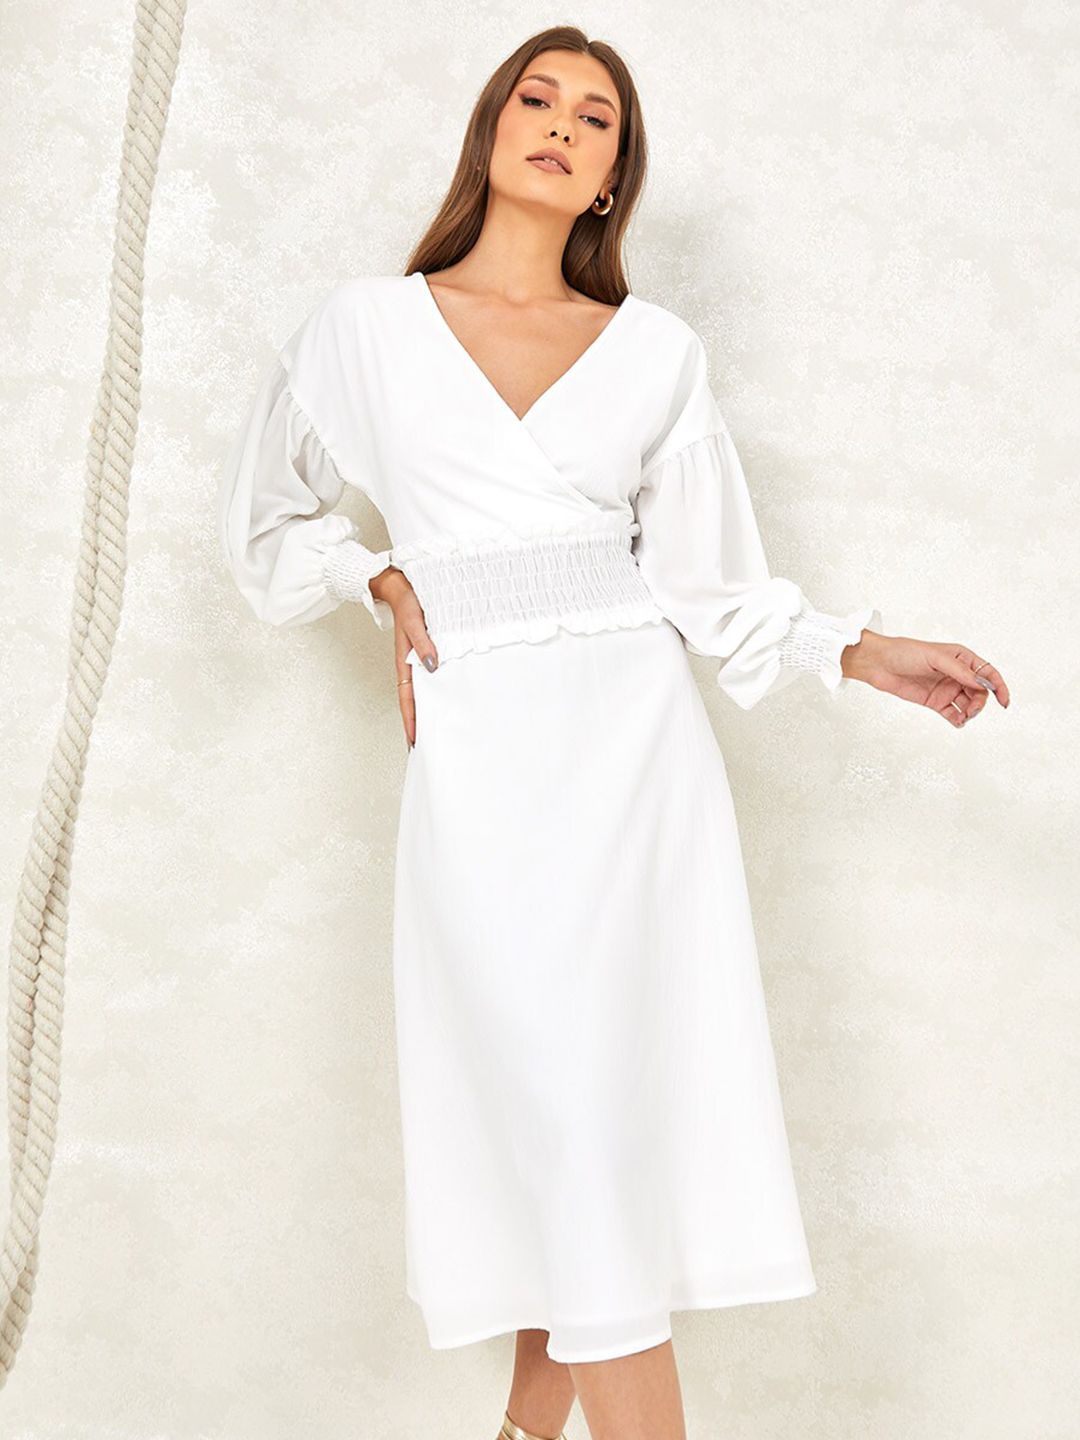 Styli White Peplum Dress Price in India